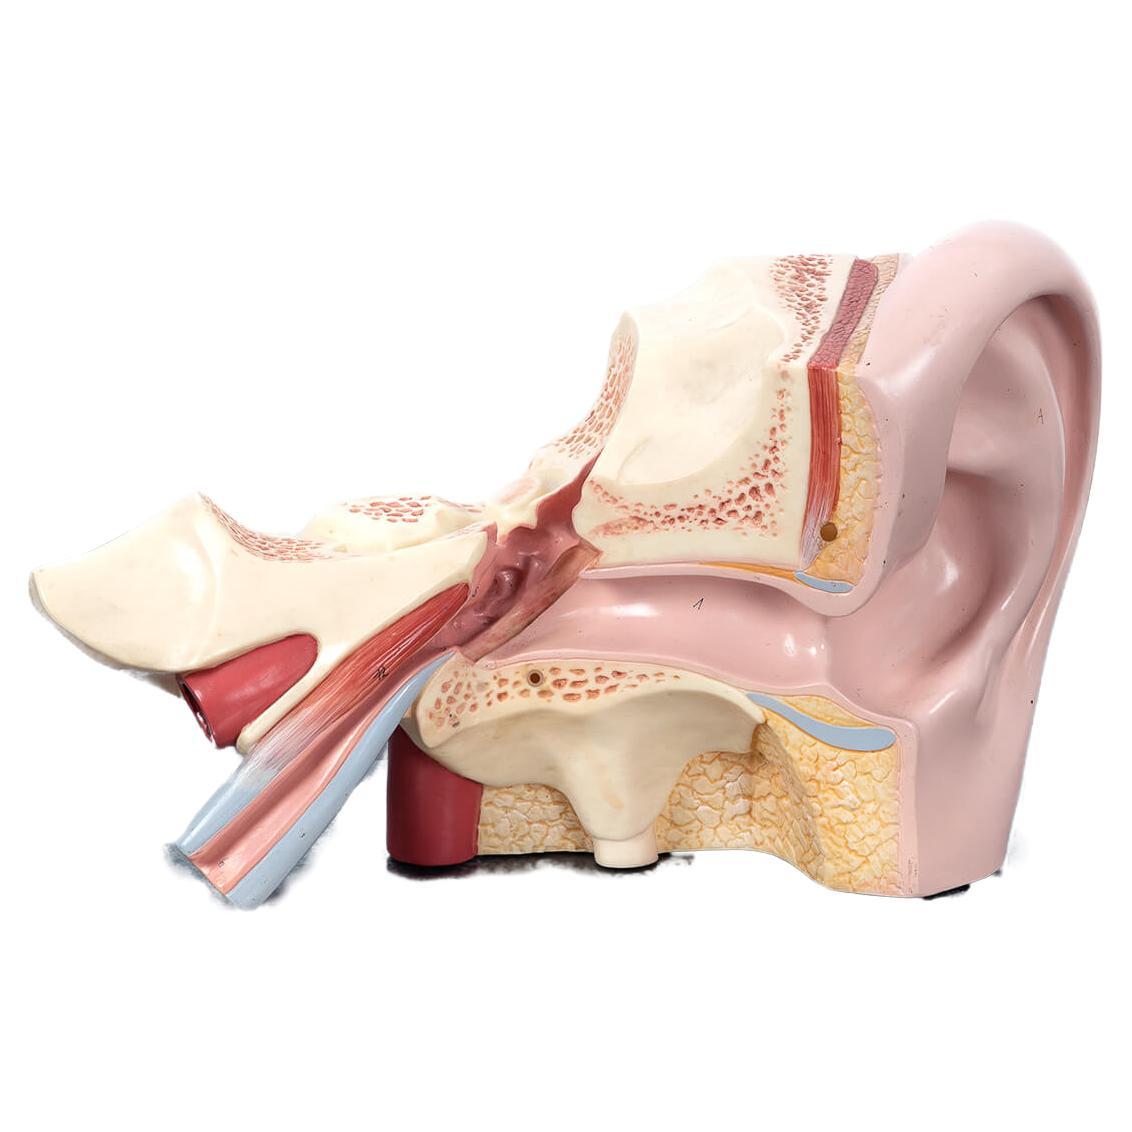 Anatomisches Modell des menschlichen Ohres